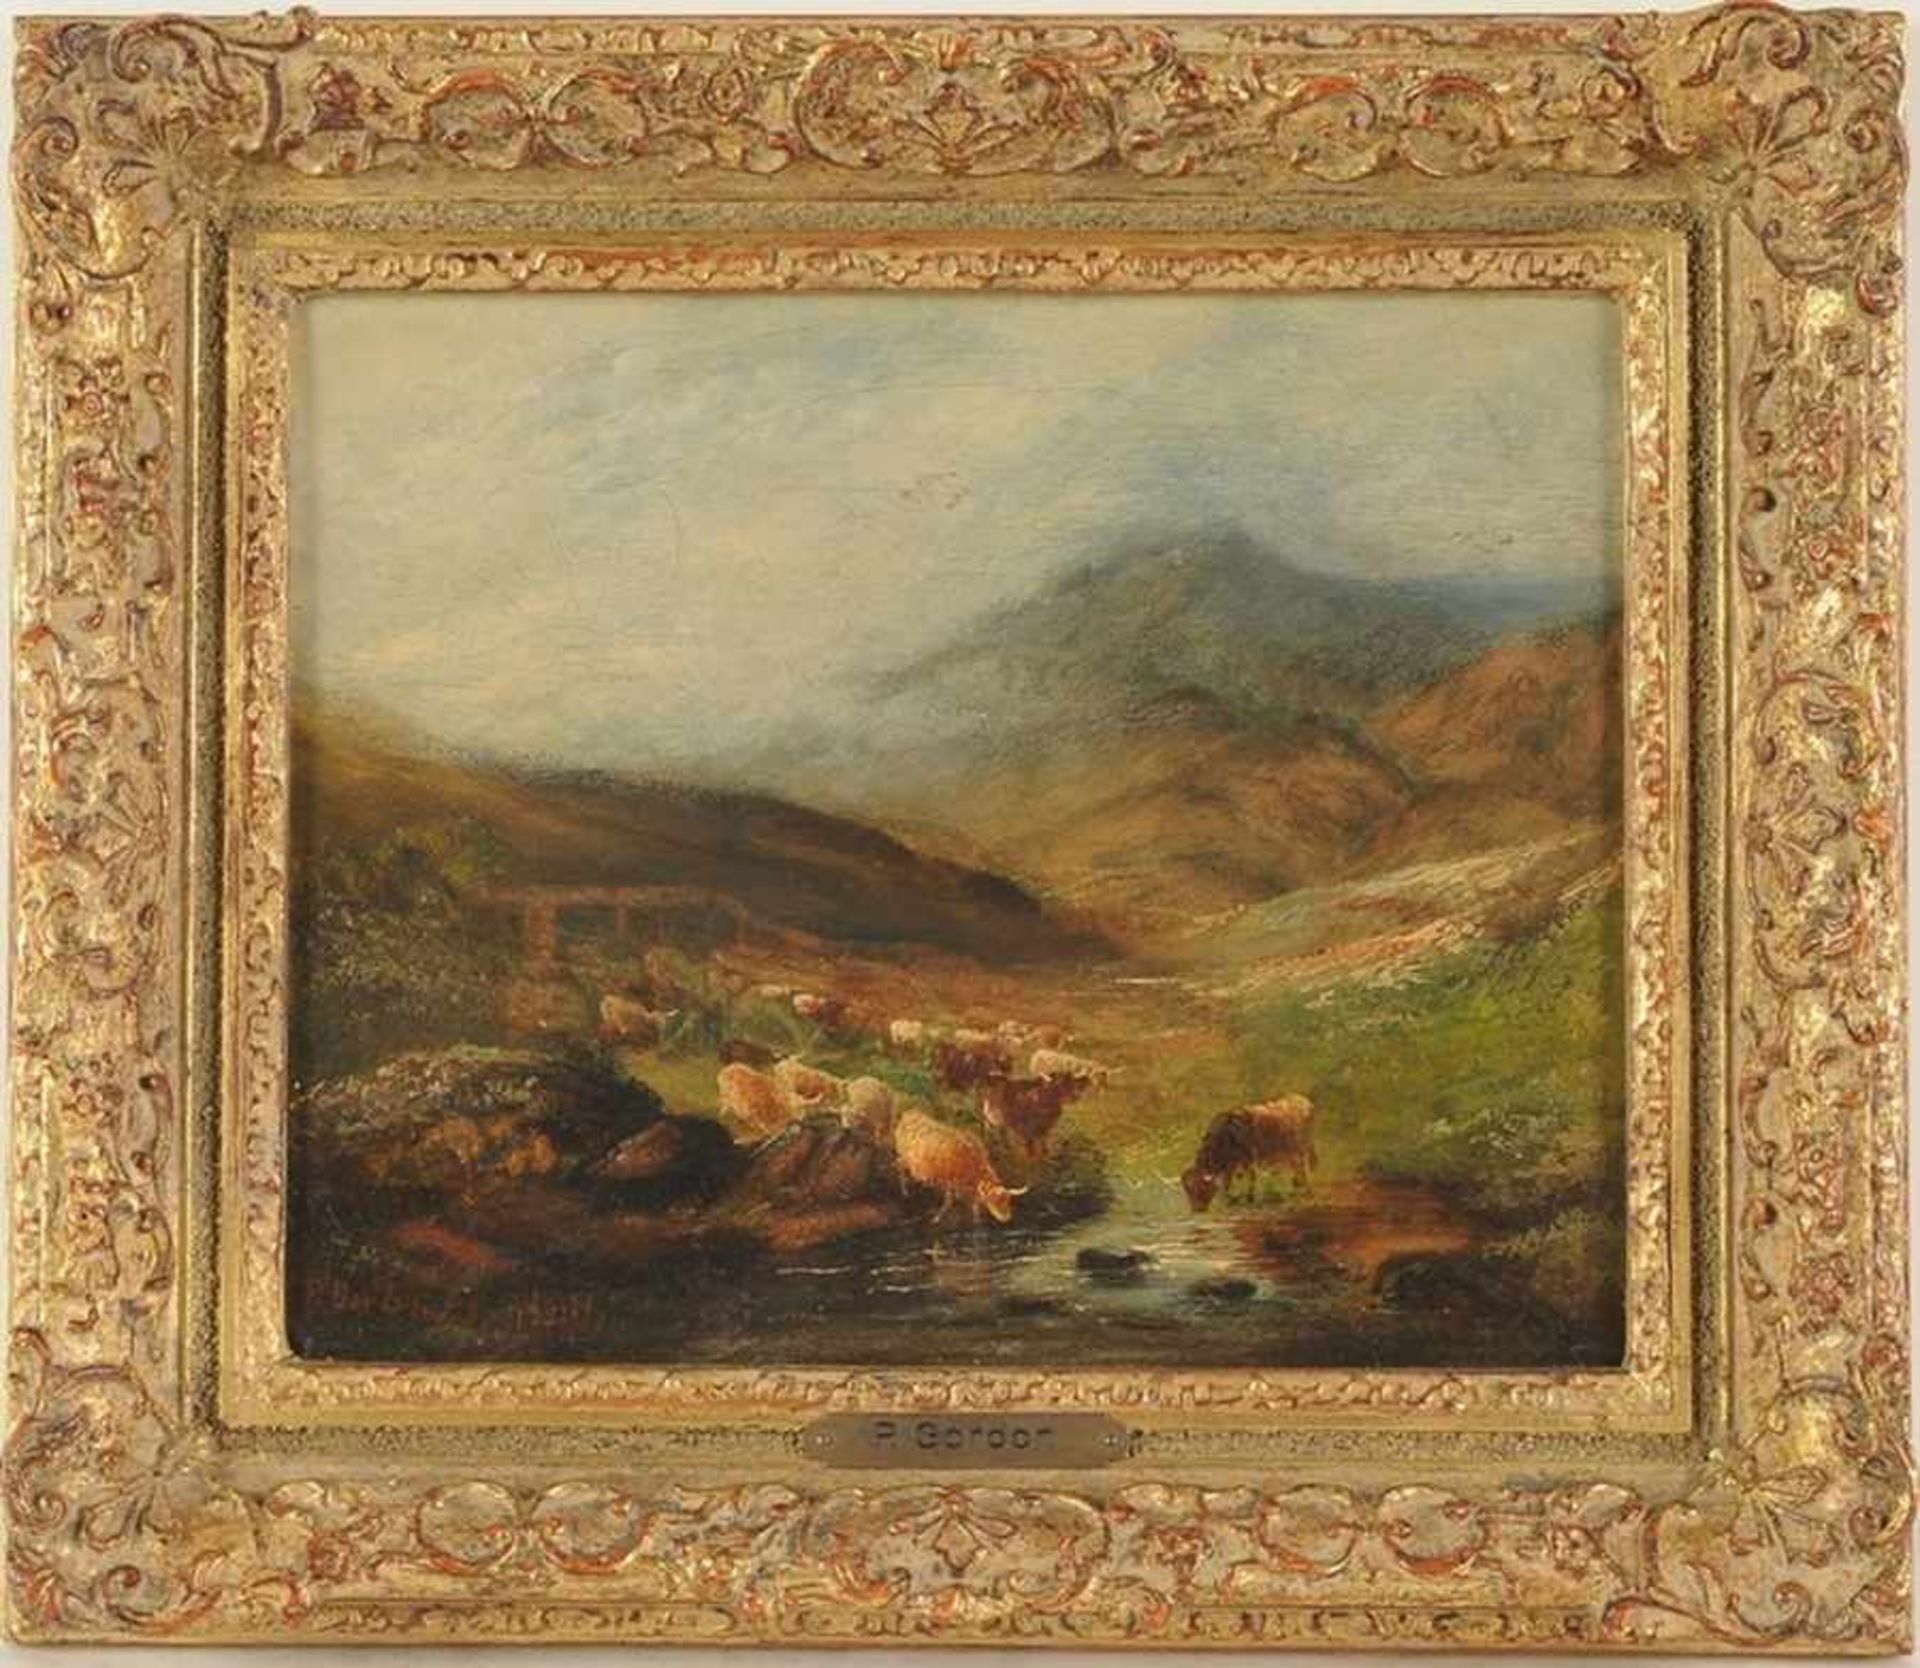 Gordon, P.(Englischer Maler, 2. H. 19. Jh.) Öl/Lwd. Gebirgslandschaft mit Viehherde an Wasserstelle.